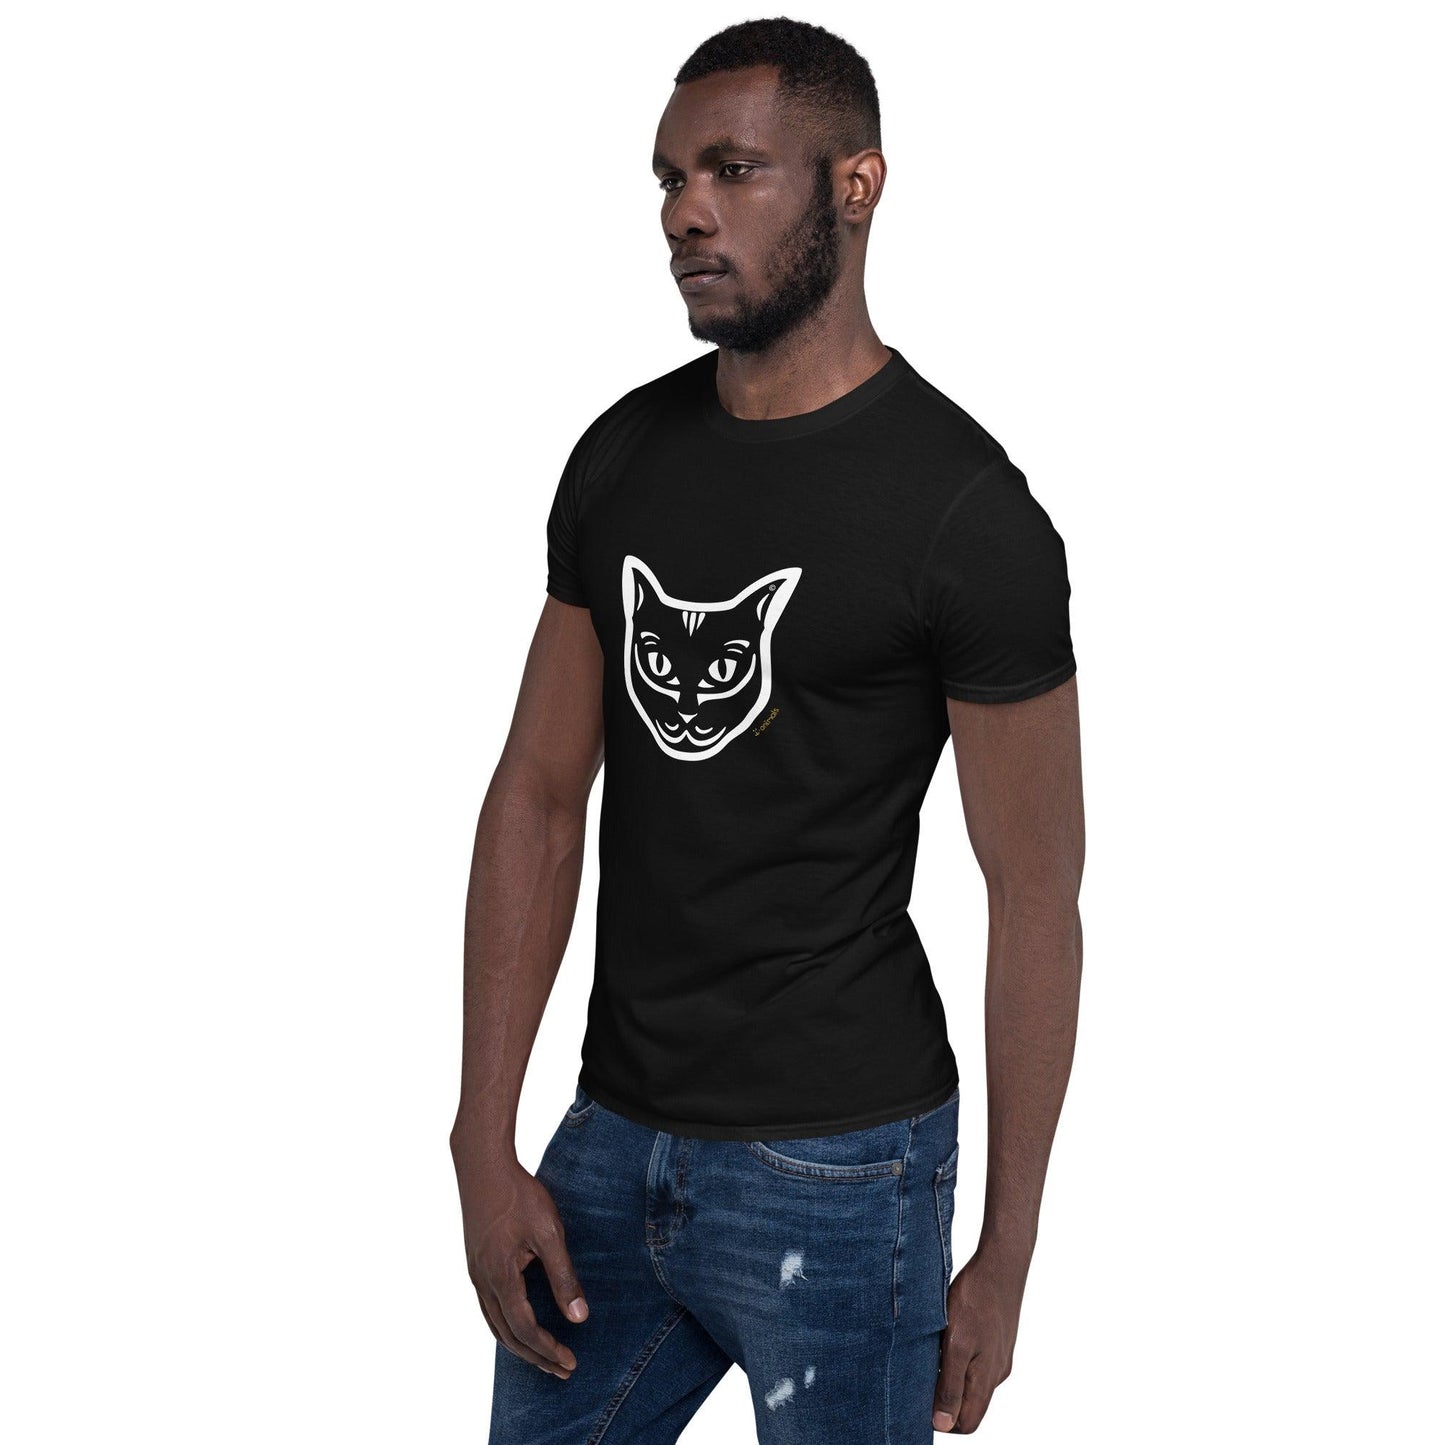 Camiseta unissex de manga curta - Gato Preto - Tribal i-animals